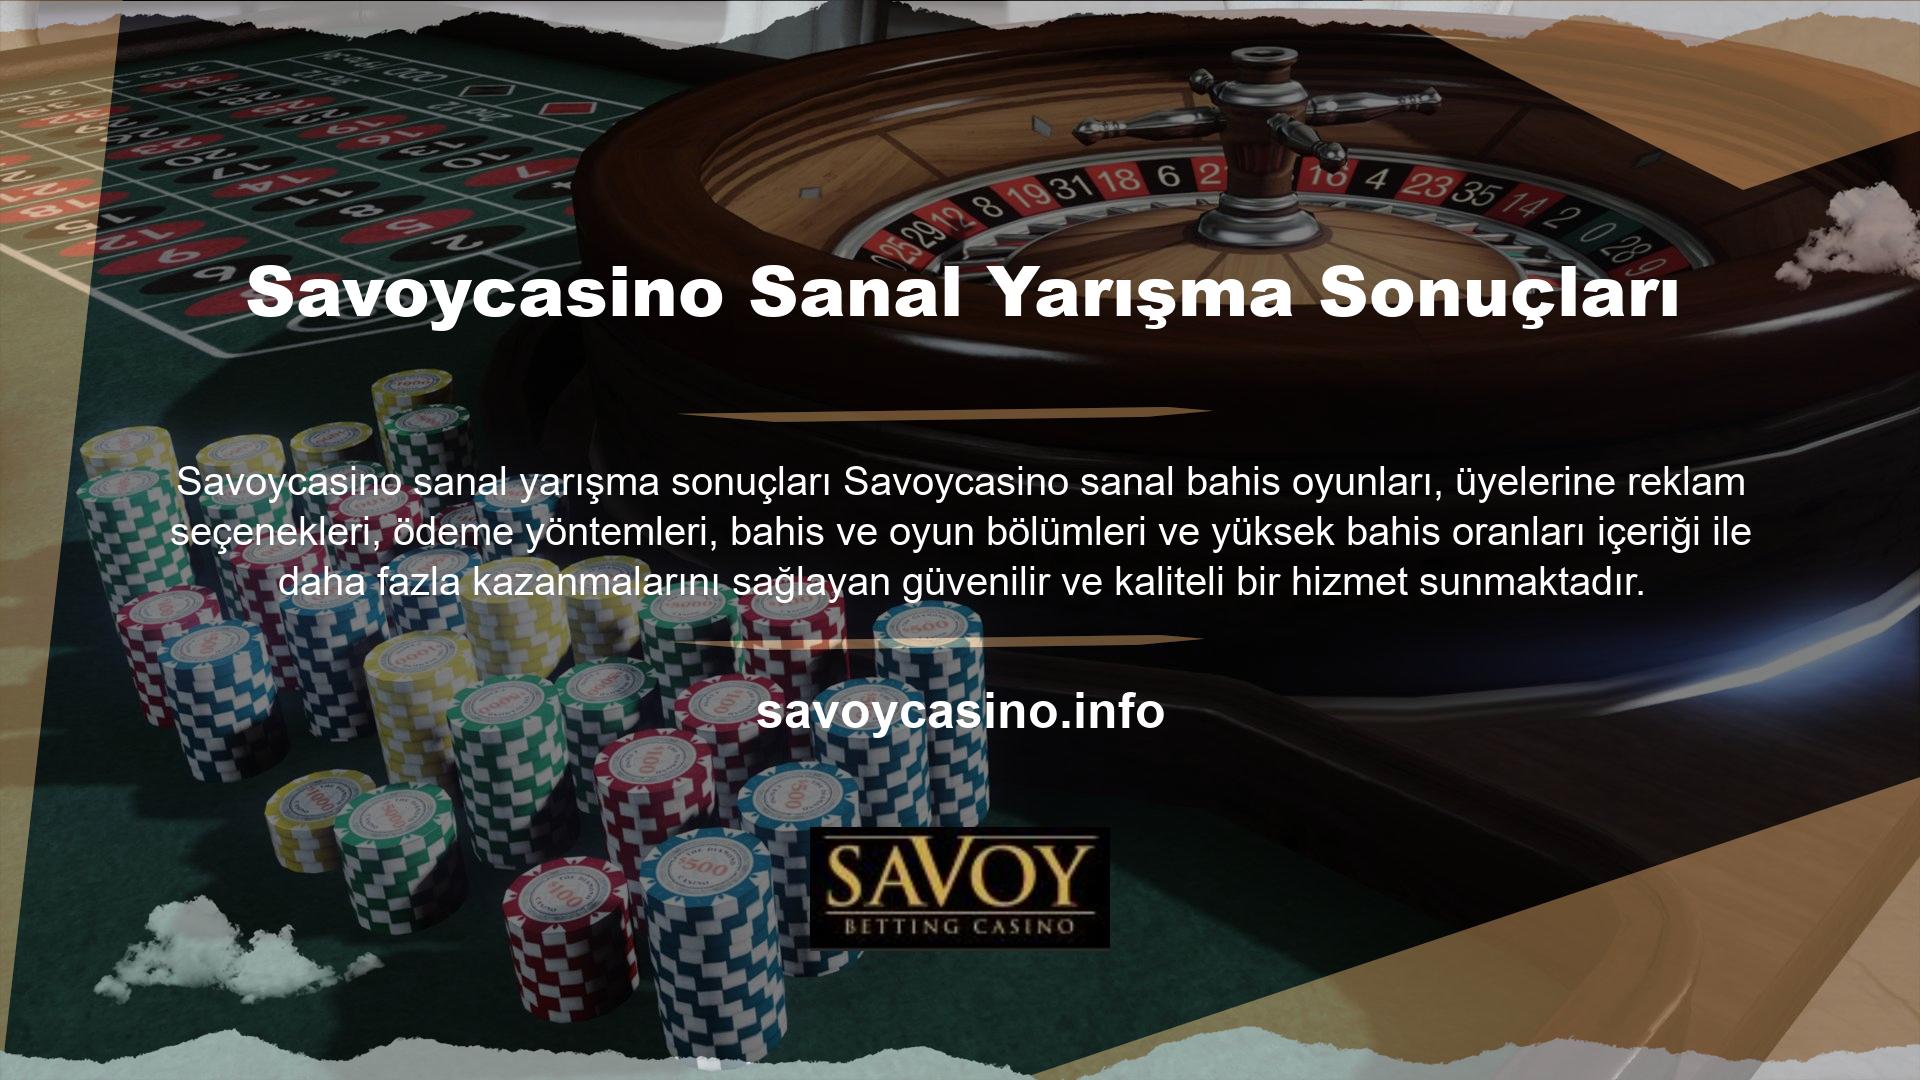 Savoycasino üye memnuniyetine değer veriyor ve bu doğrultuda iletişim konusunda oldukça hassas davranıyor